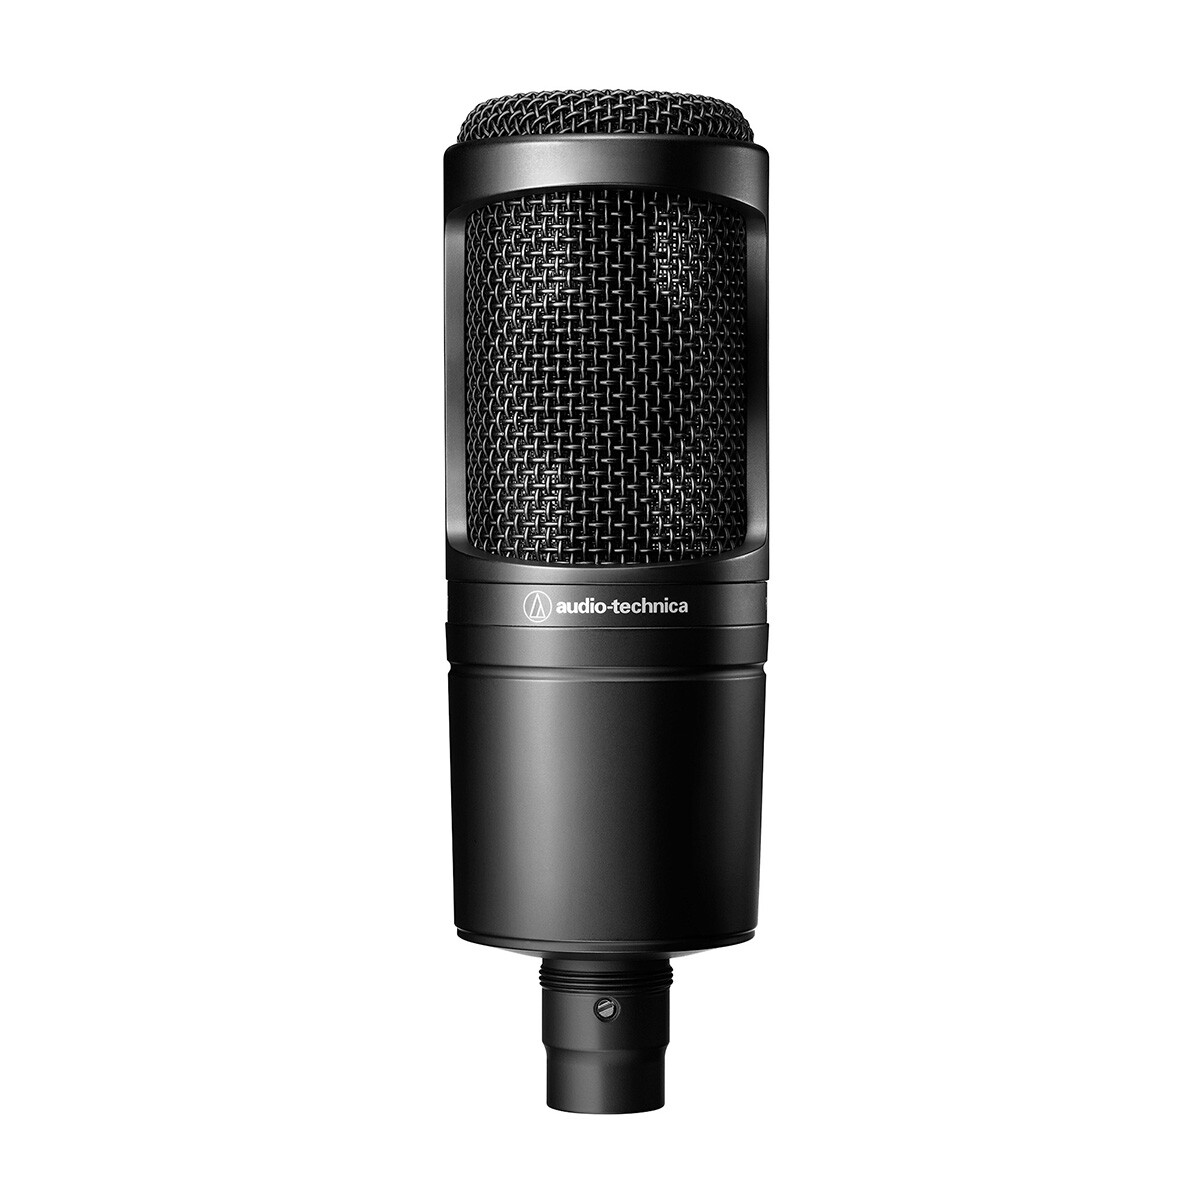 Micrófono de estudio condensador cardioide audio-technica at2020 xlr - Microfono condensador audio-technica at2020 - negro 